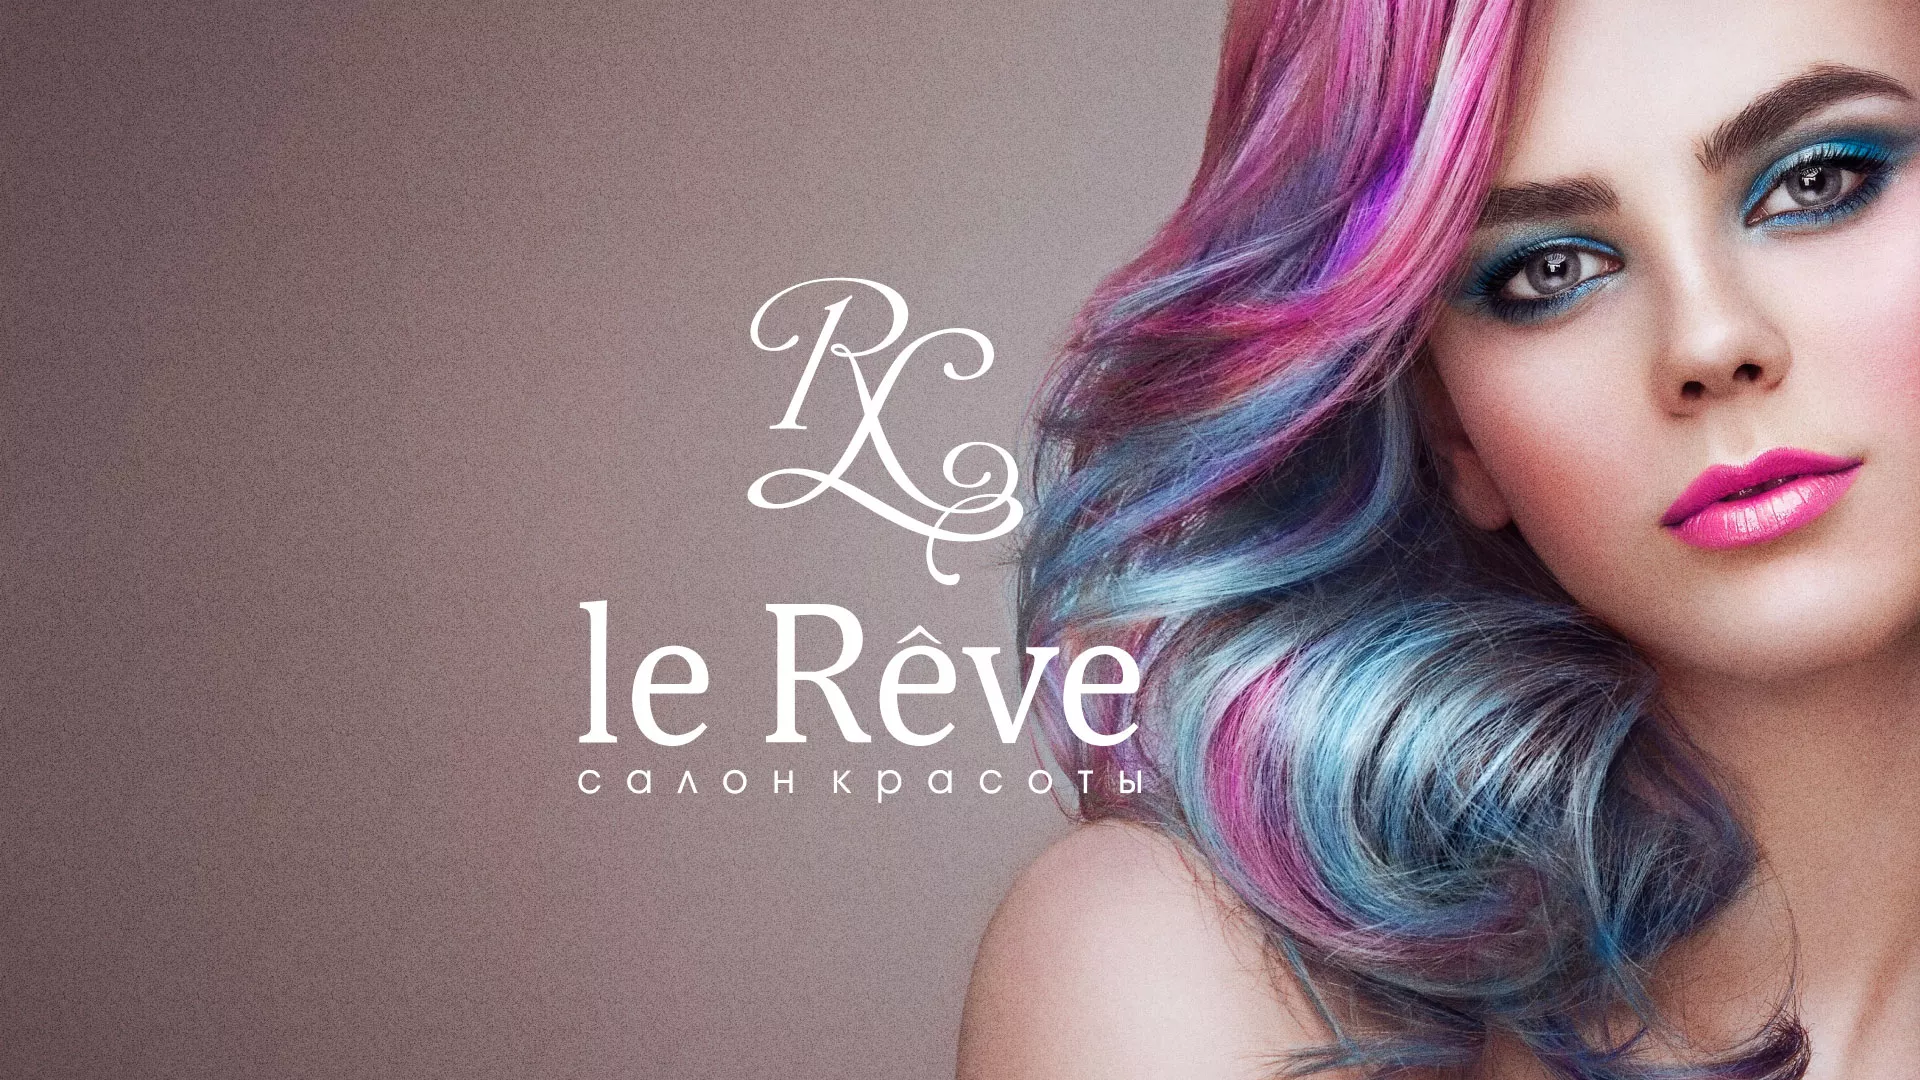 Создание сайта для салона красоты «Le Reve» в Абакане